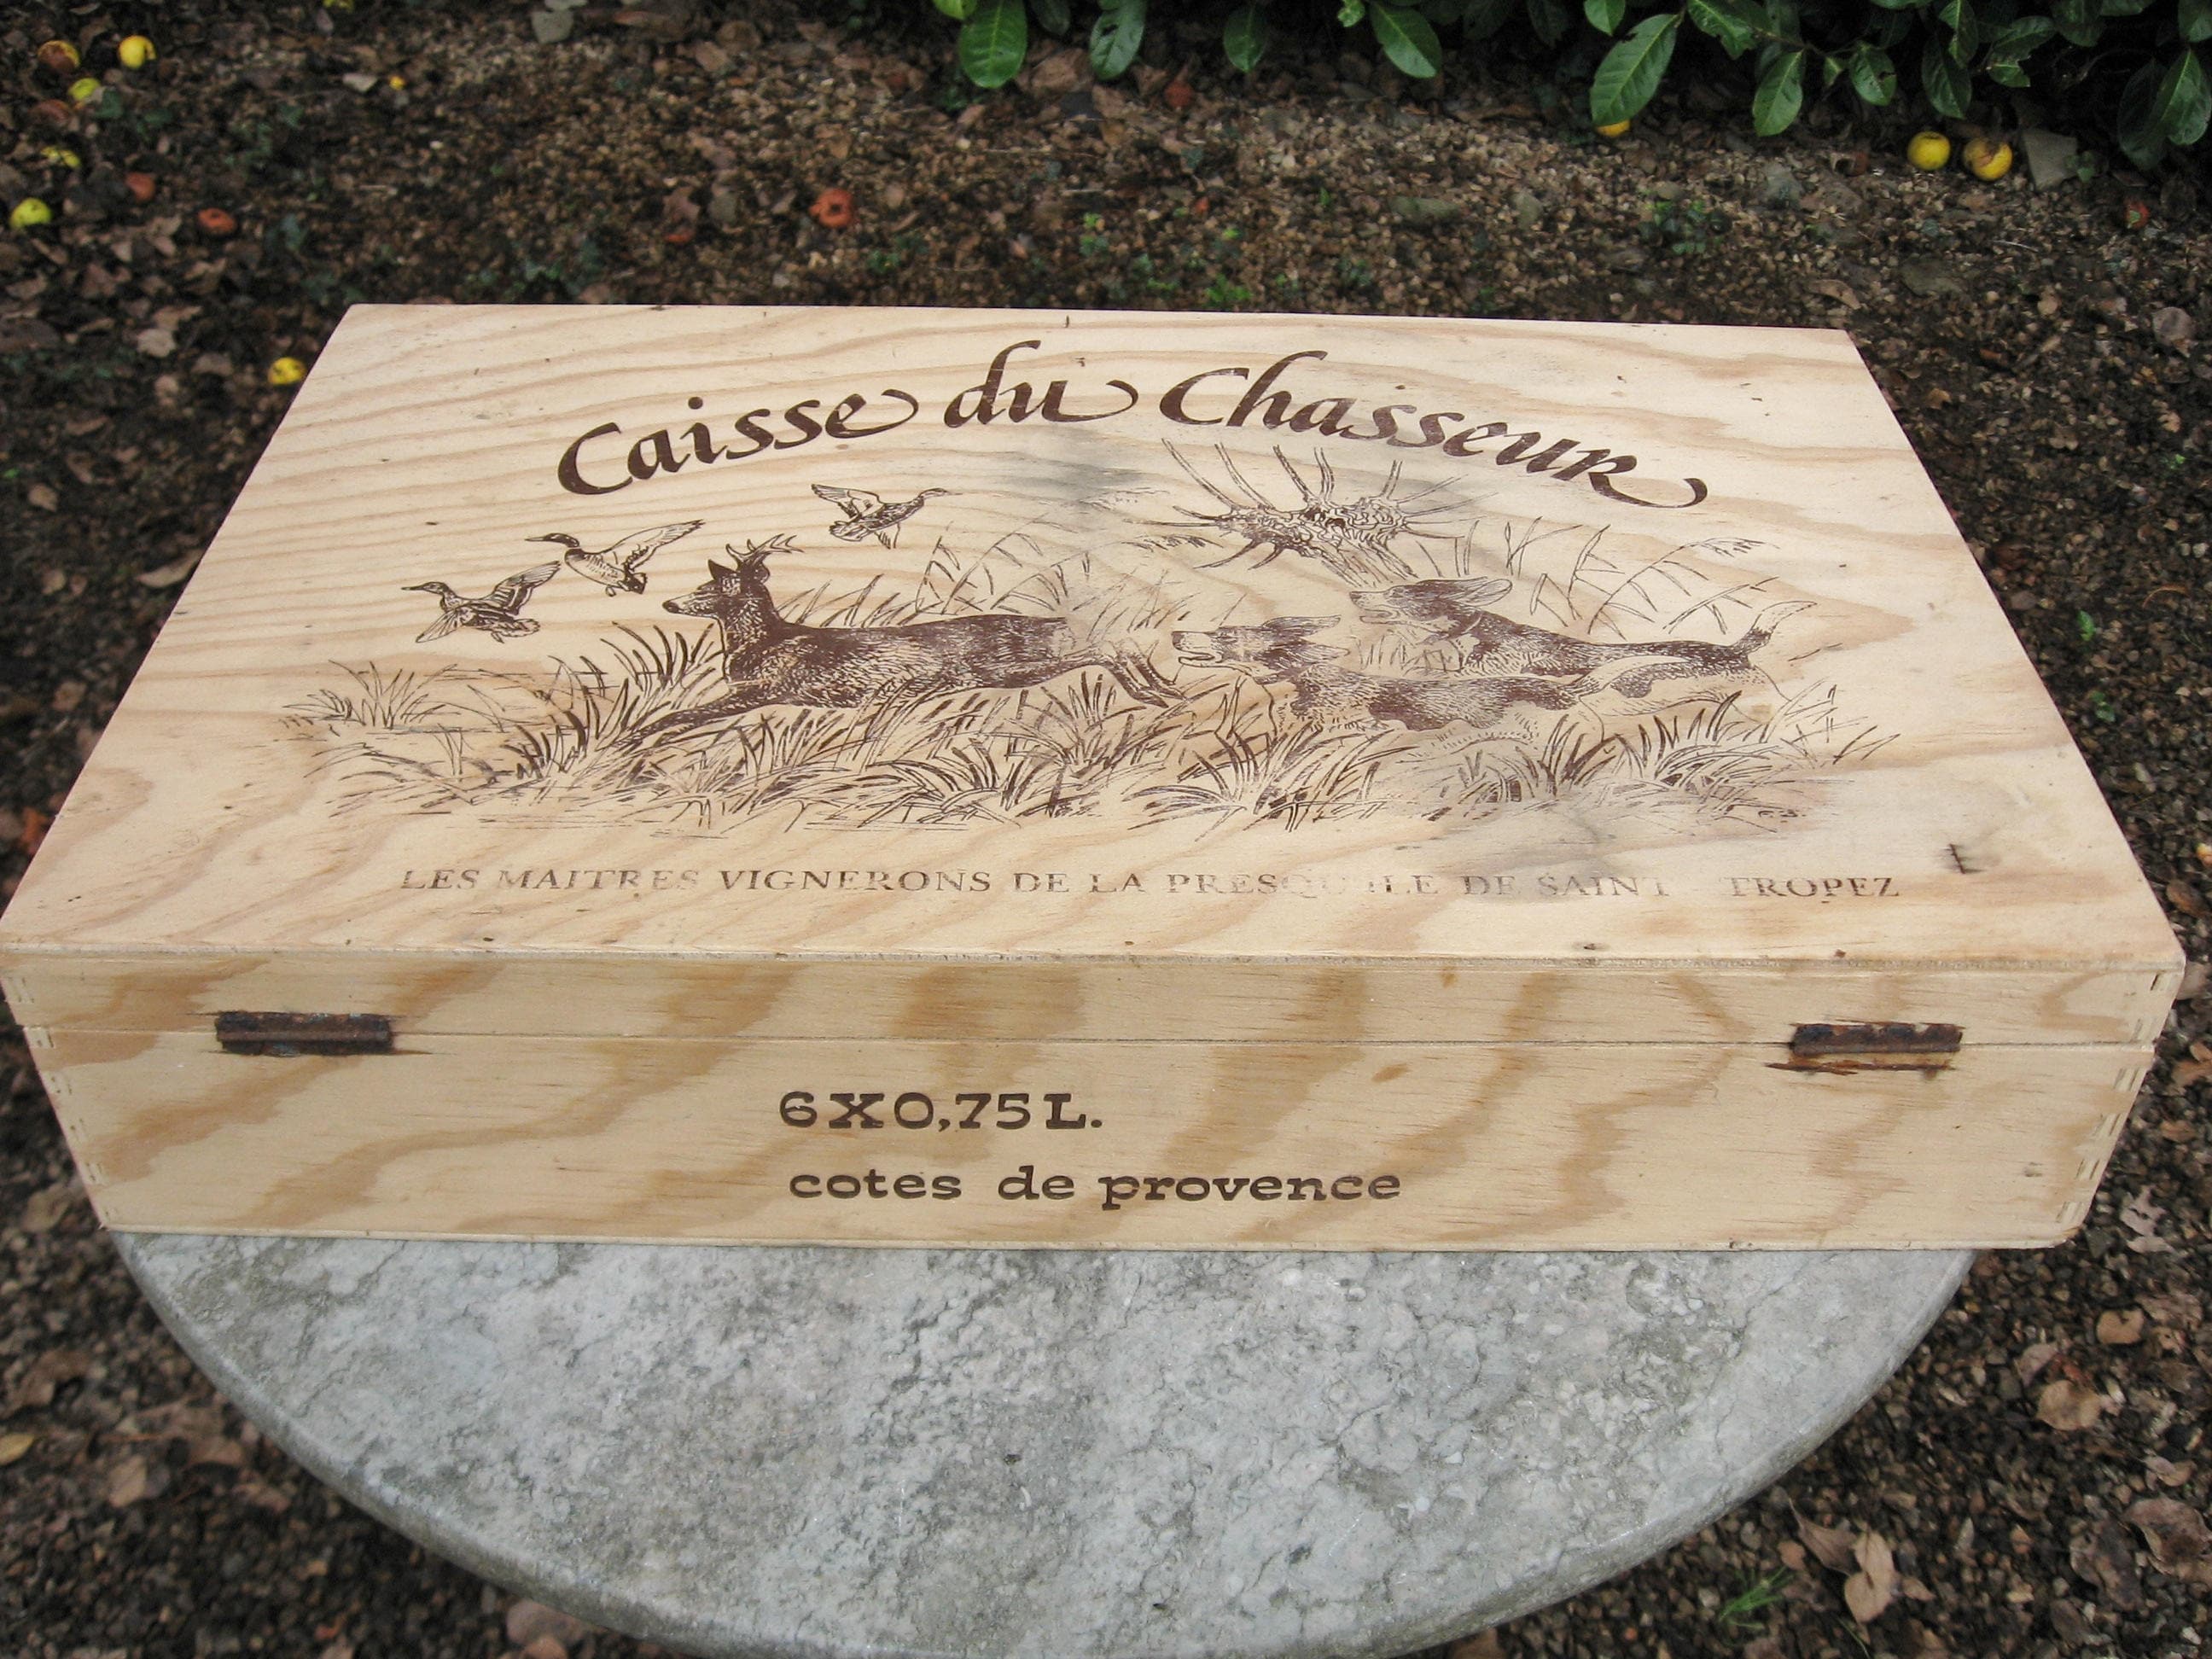 Une Très Belle Français Boîte à Vin Caisse Du Chasseur et Bouteilles de Chasse Thème Grand Pour La C